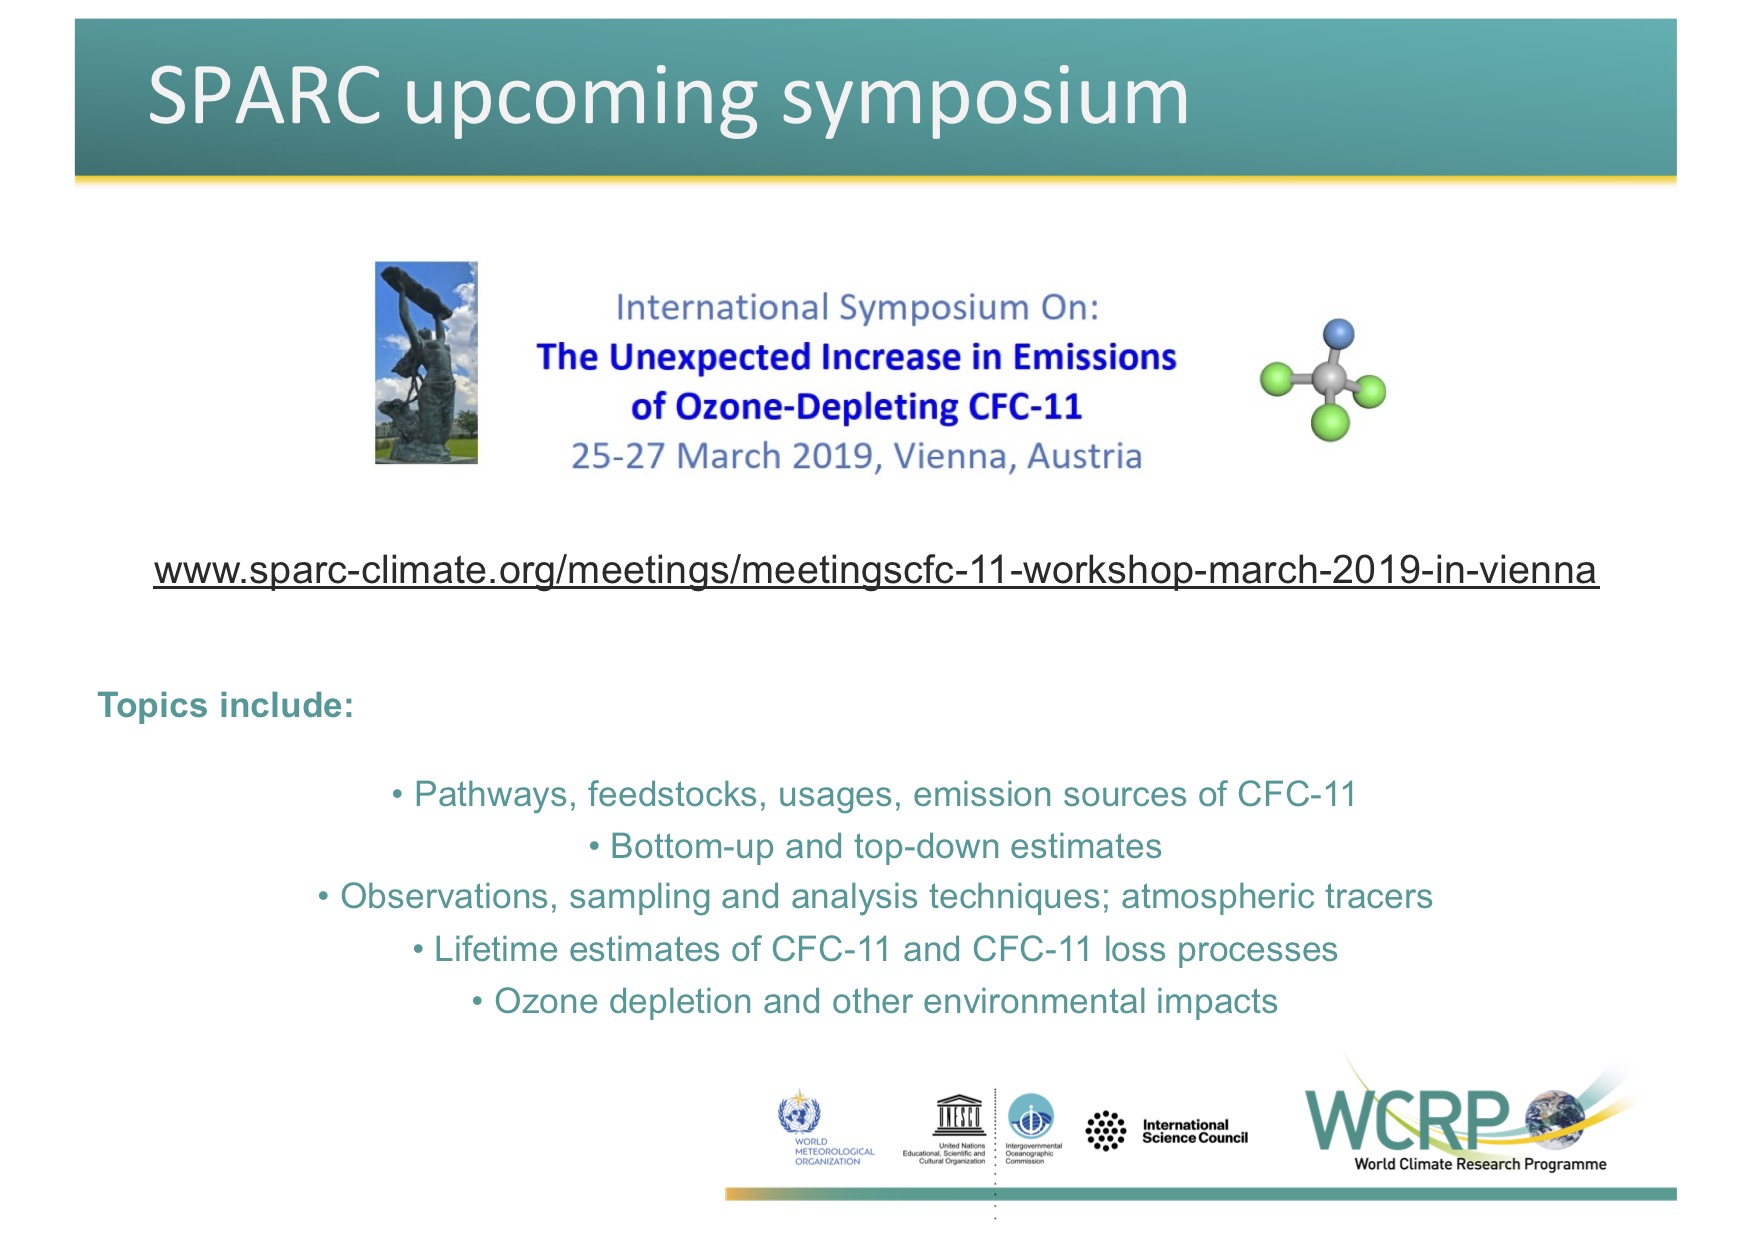 SPARC CFC-11 Symposium